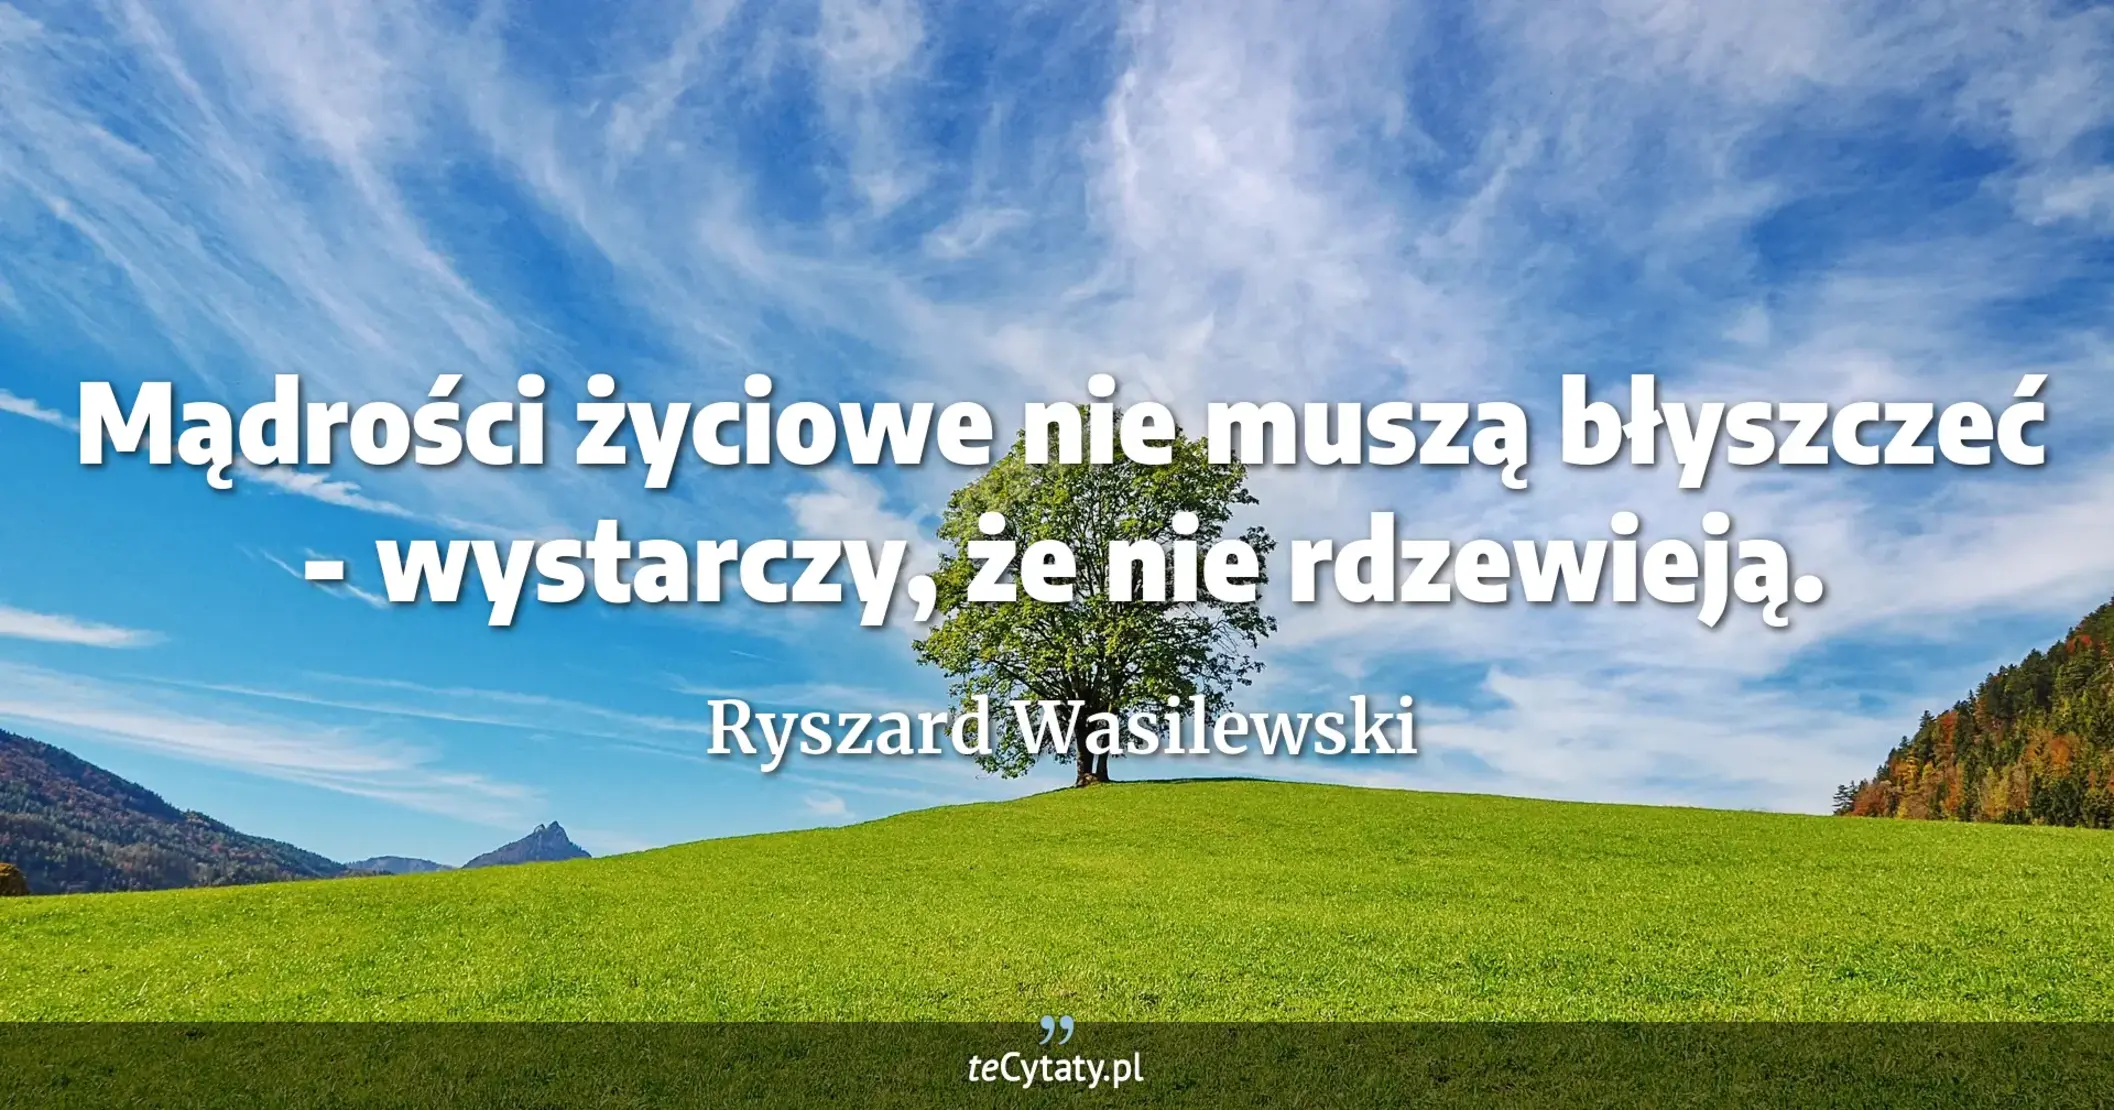 Mądrości życiowe nie muszą błyszczeć - wystarczy, że nie rdzewieją. - Ryszard Wasilewski